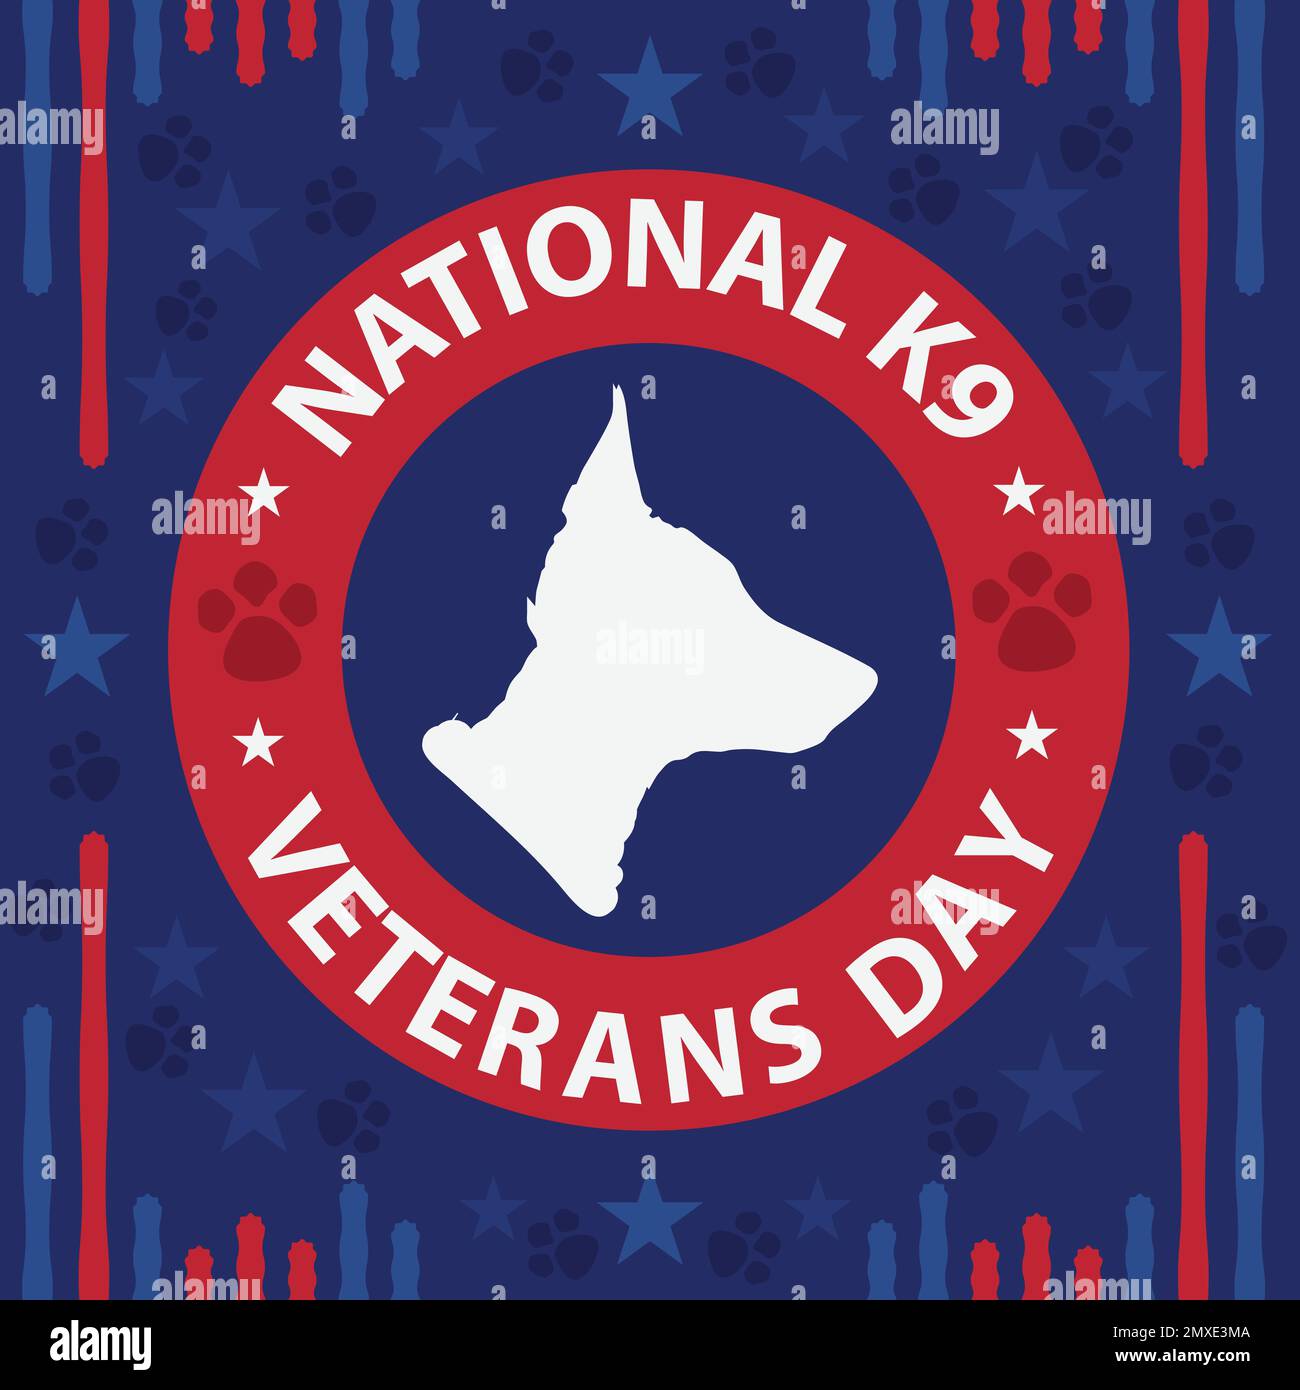 Diseño de banner vectorial celebrando el Día Nacional de los Veteranos K9 en marzo. Fondo nacional del día de los veteranos K9 con colores y símbolos del tema de la bandera americana. Ilustración del Vector